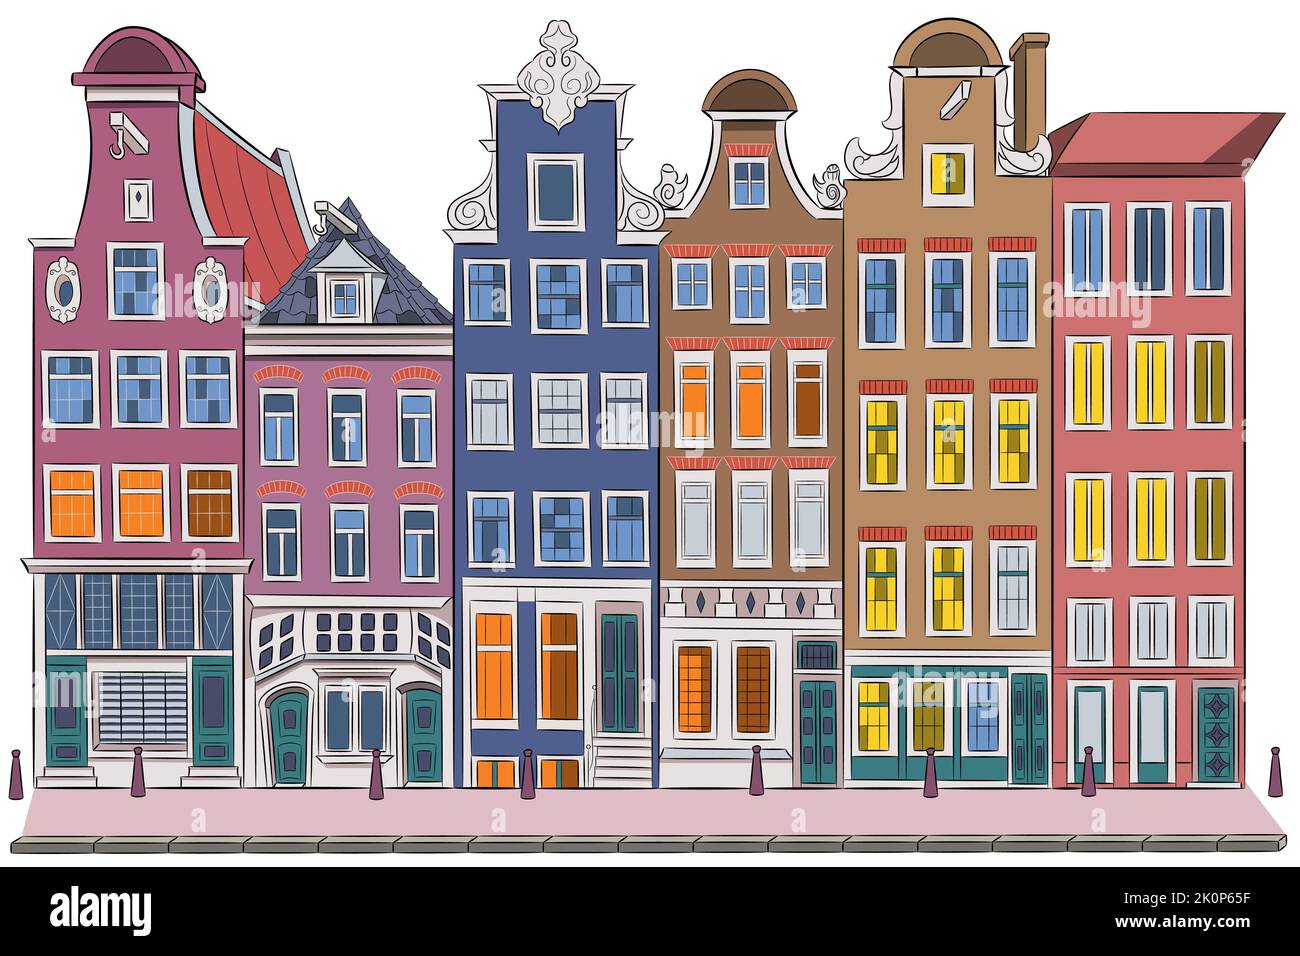 Façades de vieilles maisons traditionnelles colorées sur le front de mer. Amsterdam. Pays-Bas. Illustration vectorielle. Illustration de Vecteur